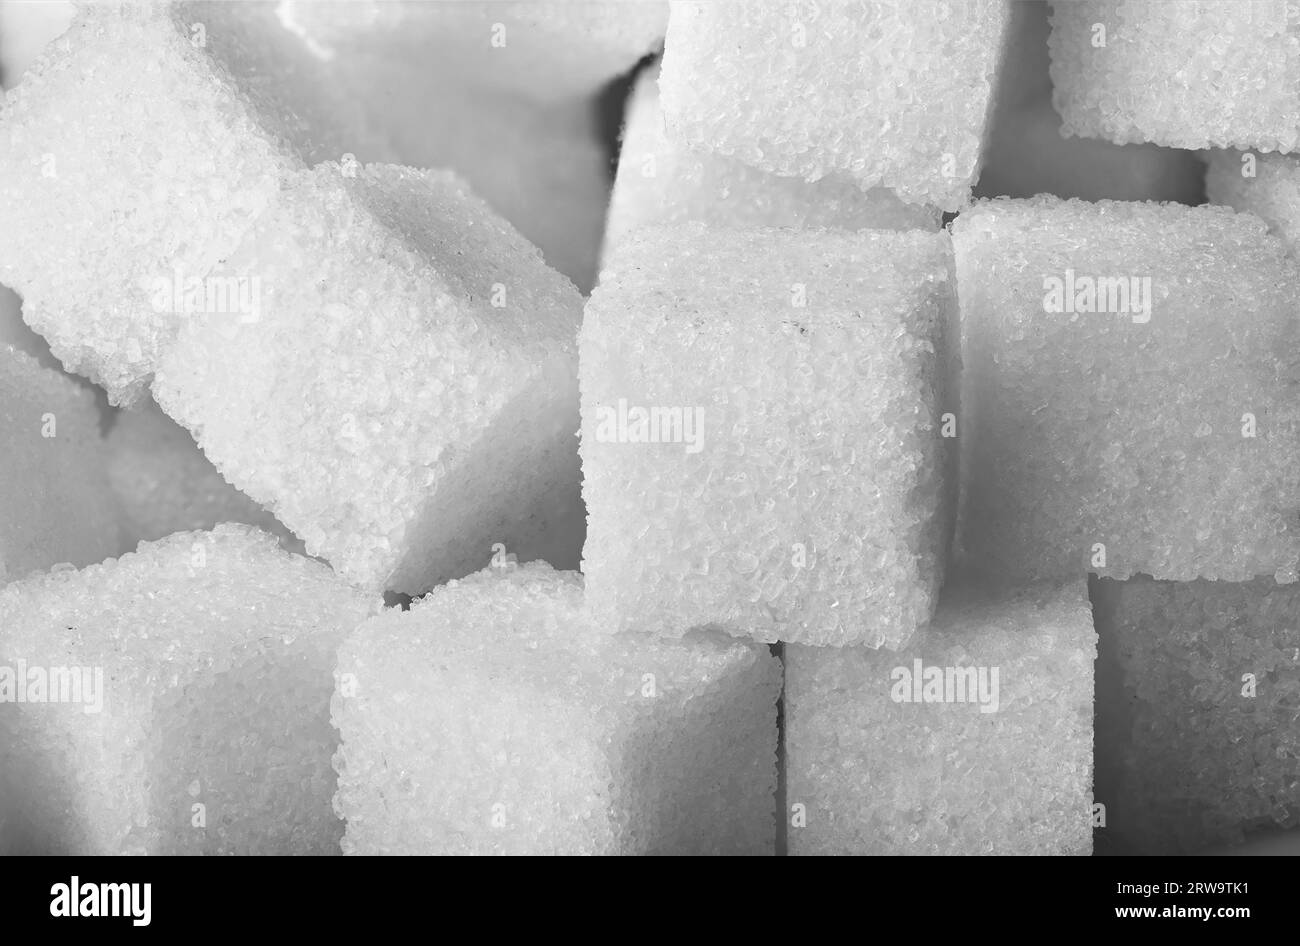 Texture of sugar cubes closeup Stock Photo - Alamy